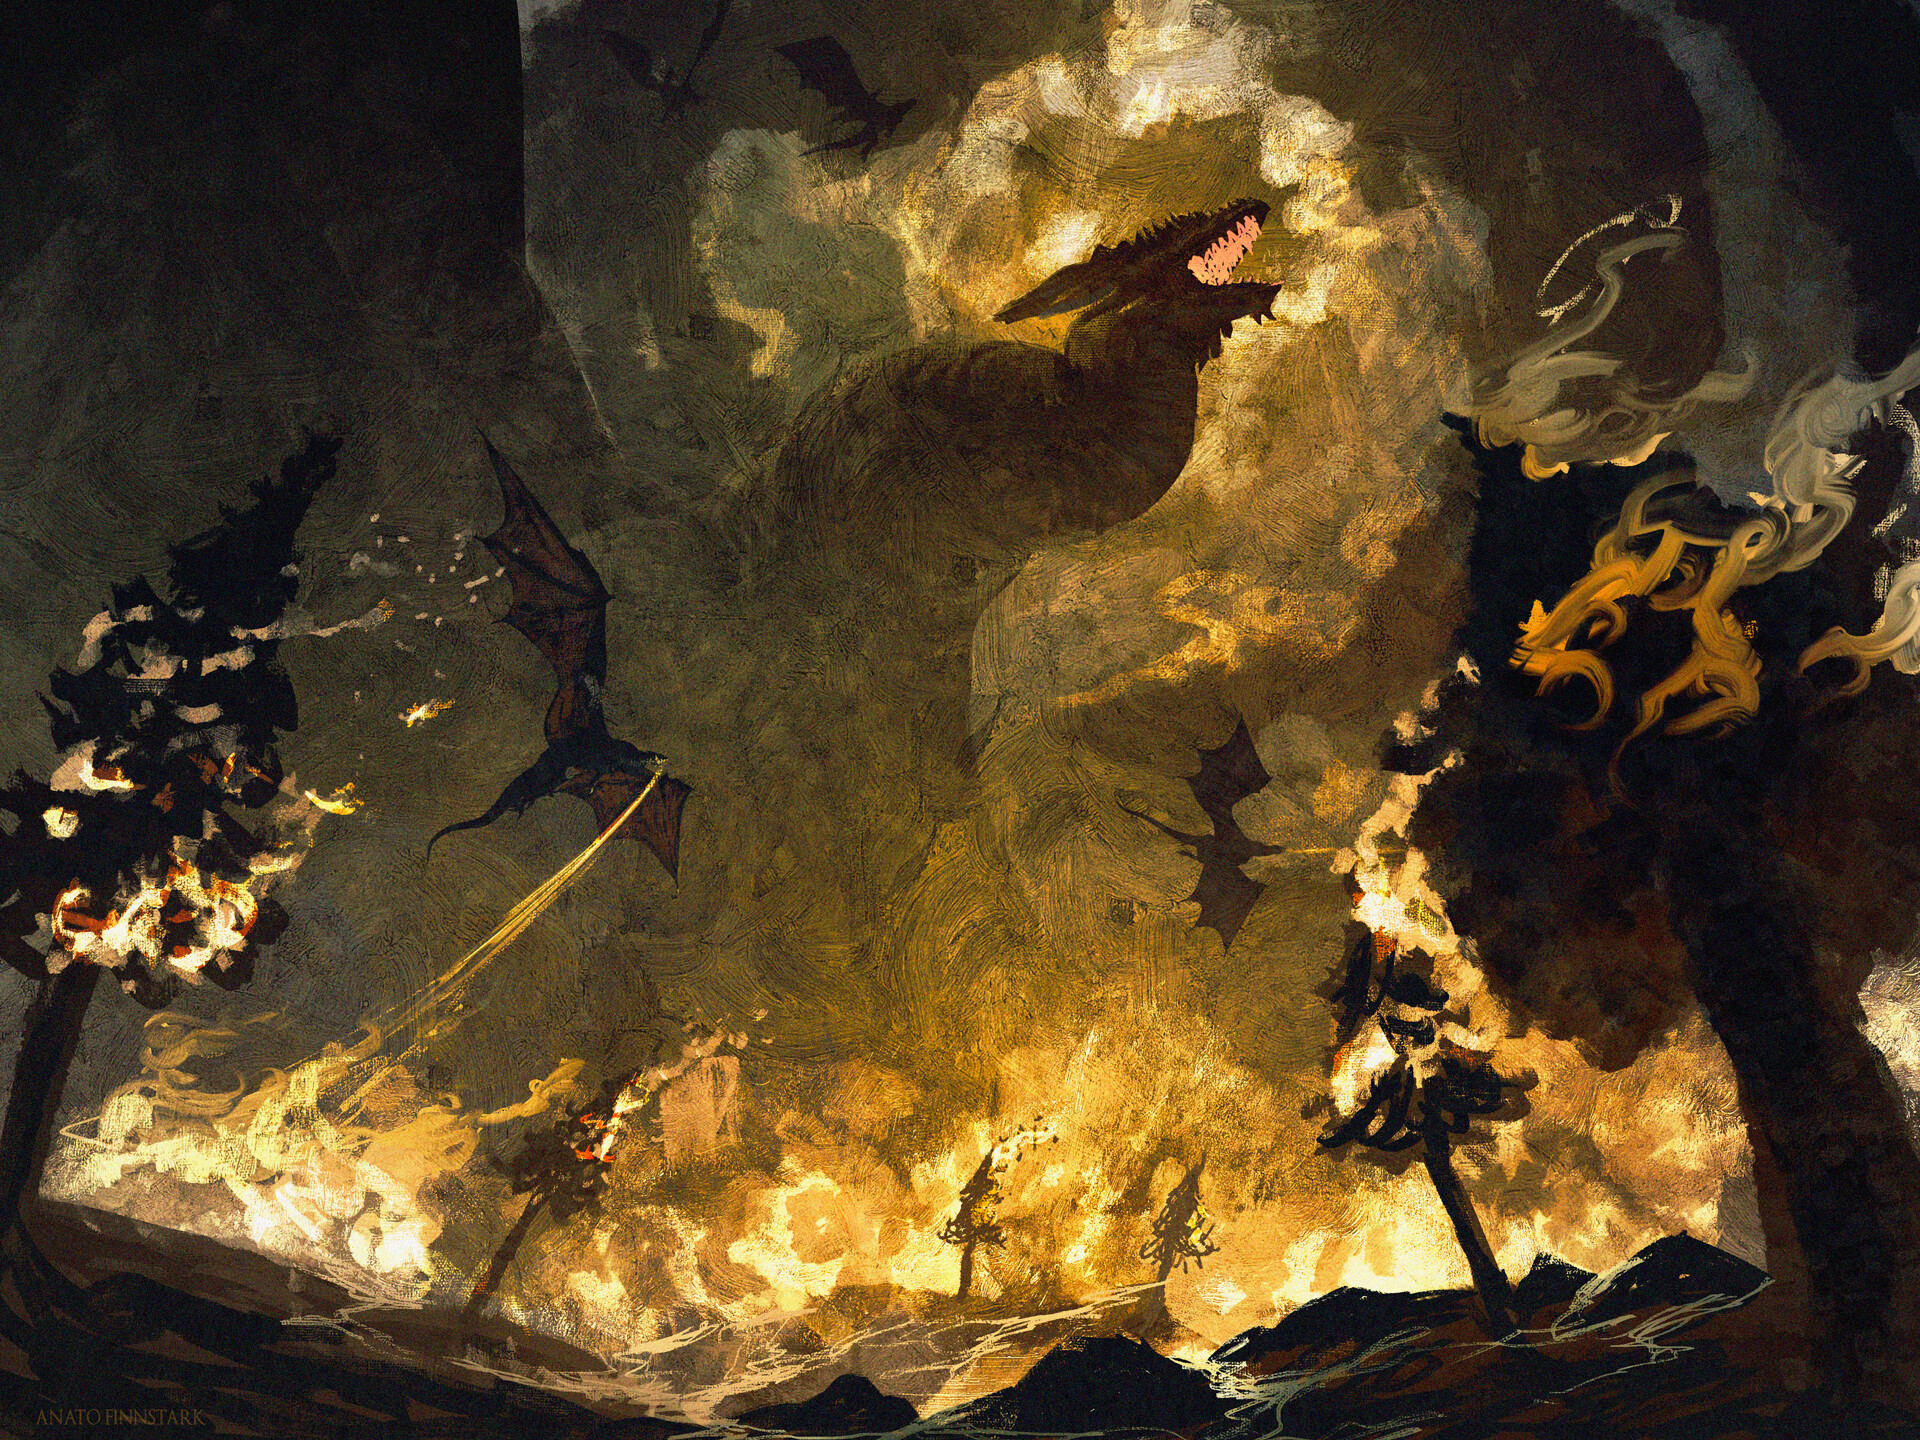 Anato Finnstark Artwork ArtStation Fantasy Art Dragon Creature Fire Burning 1920x1440